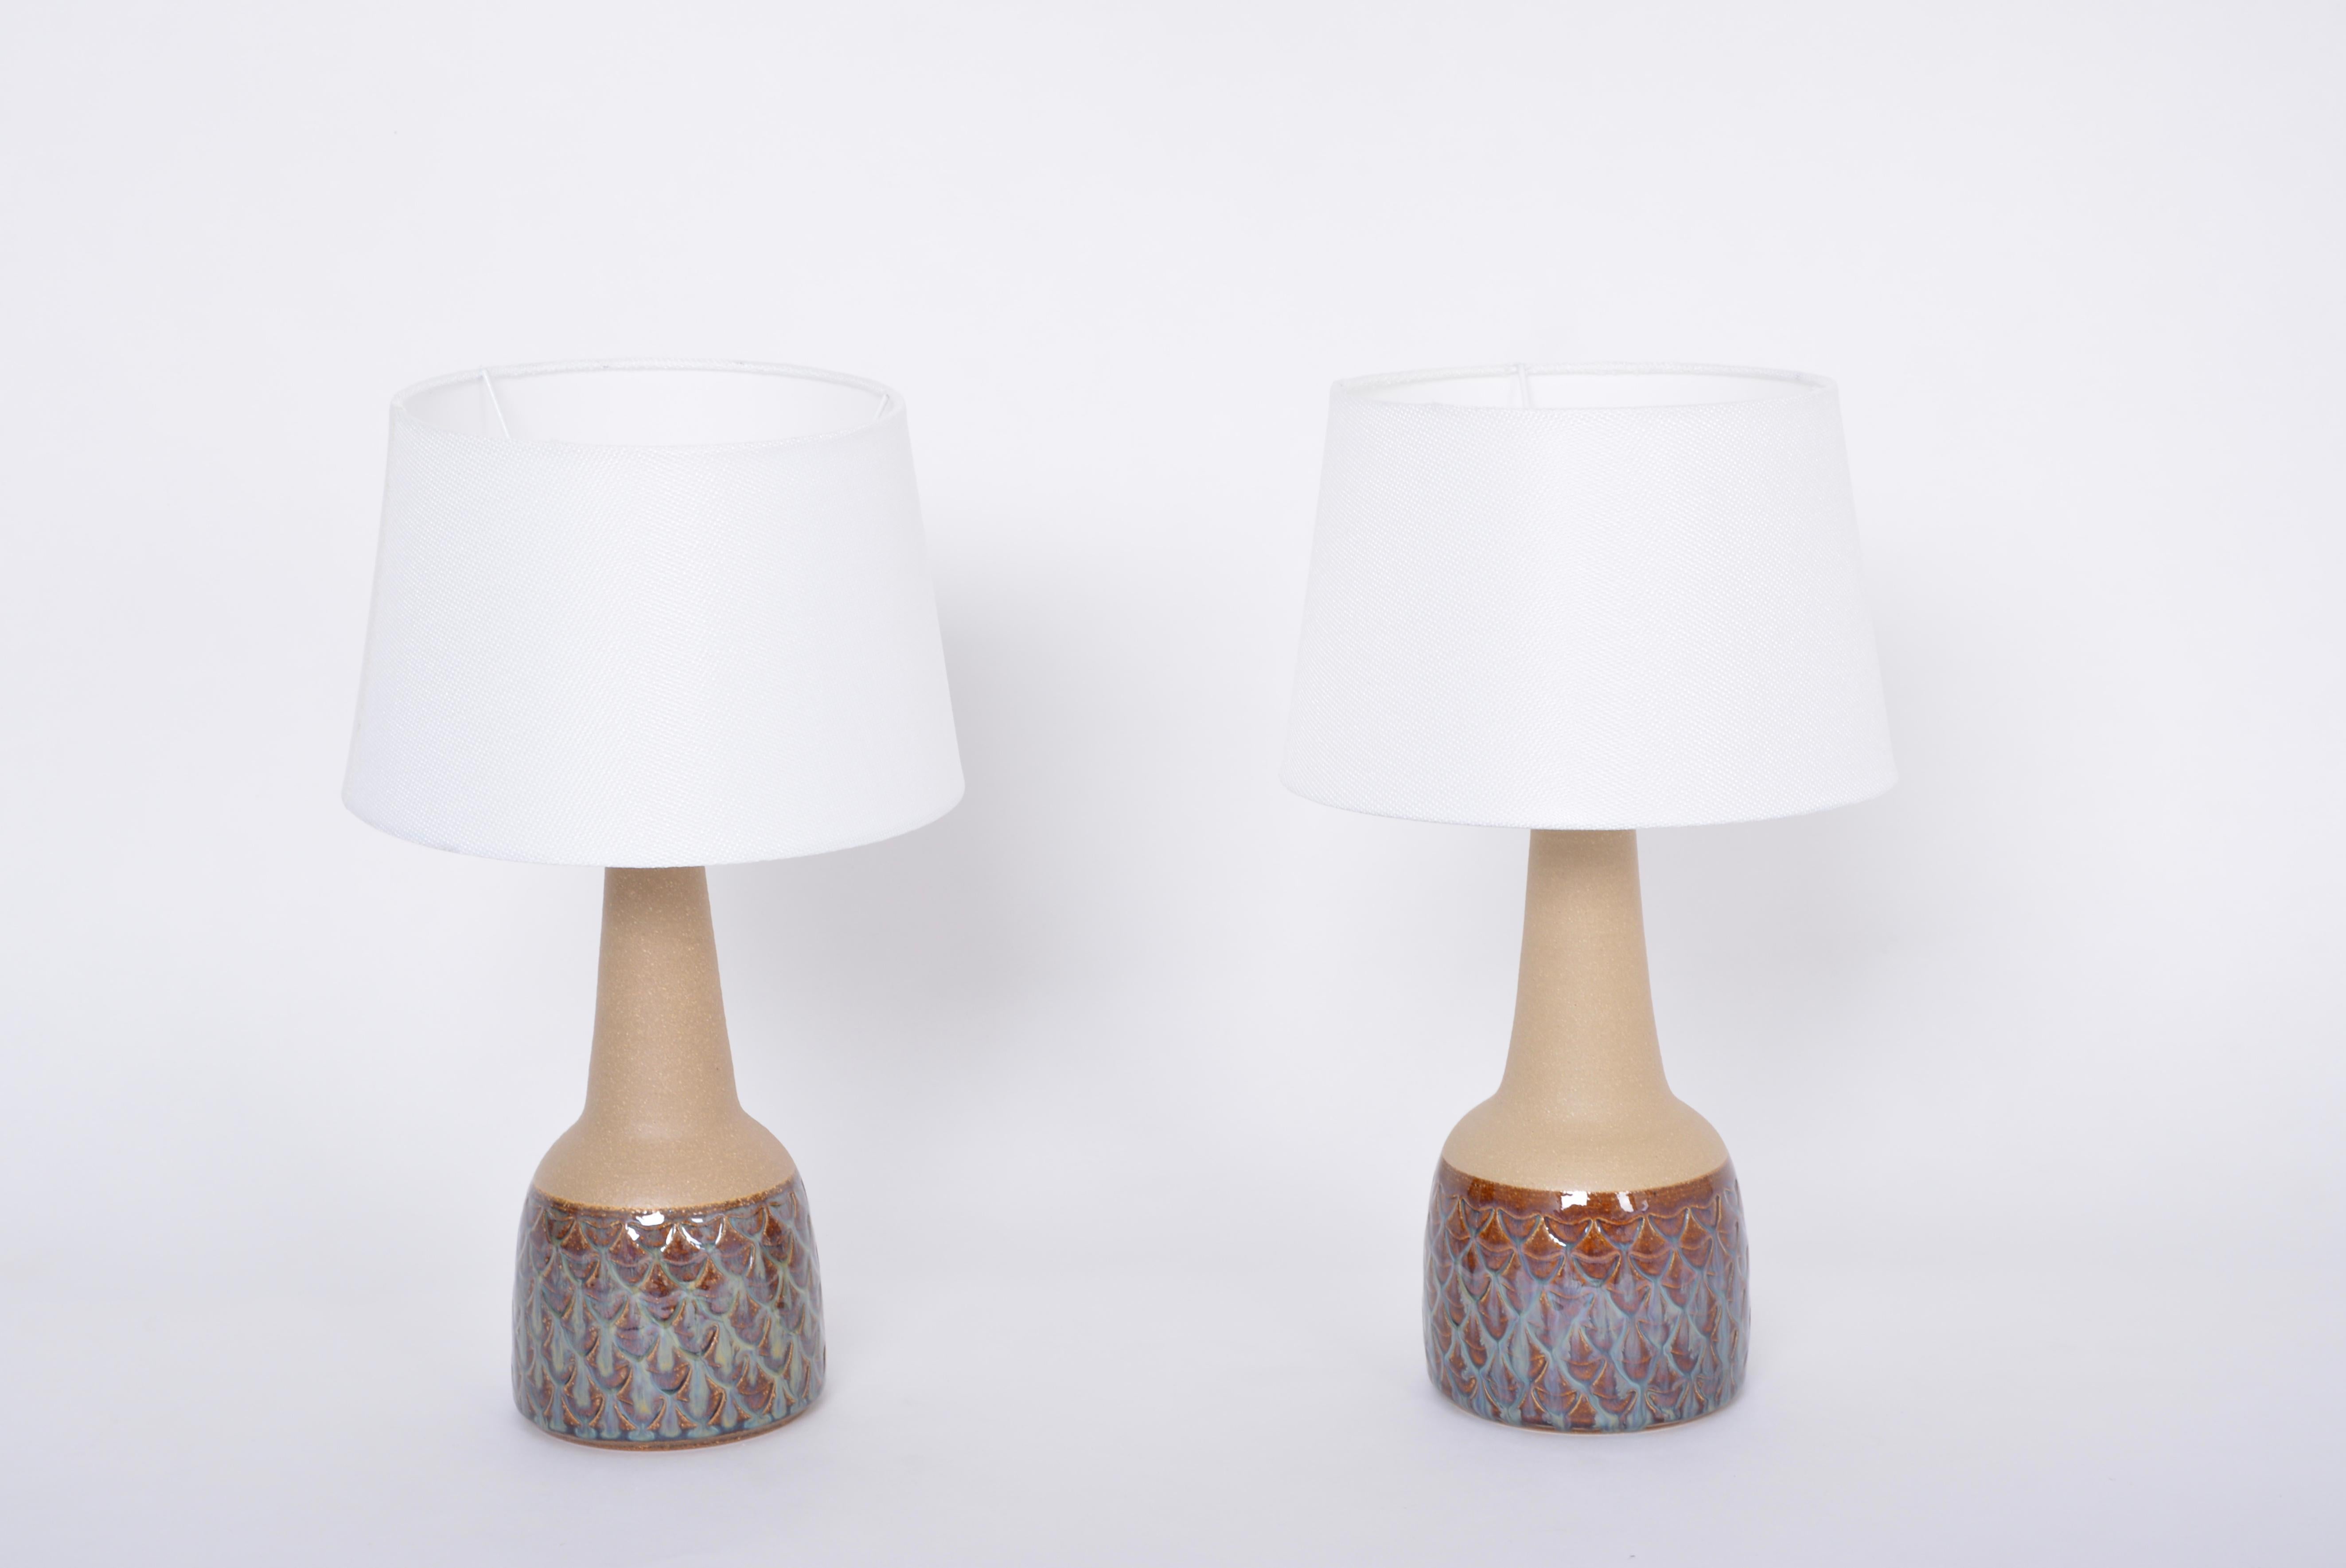 Paire de lampes de table fabriquées à la main au milieu du siècle dernier, modèle 3012 par Einar Johansen pour Soholm

Cette paire de lampes de table en grès a été conçue par Einar Johansen et fabriquée à la main sur l'île danoise de Bornholm par